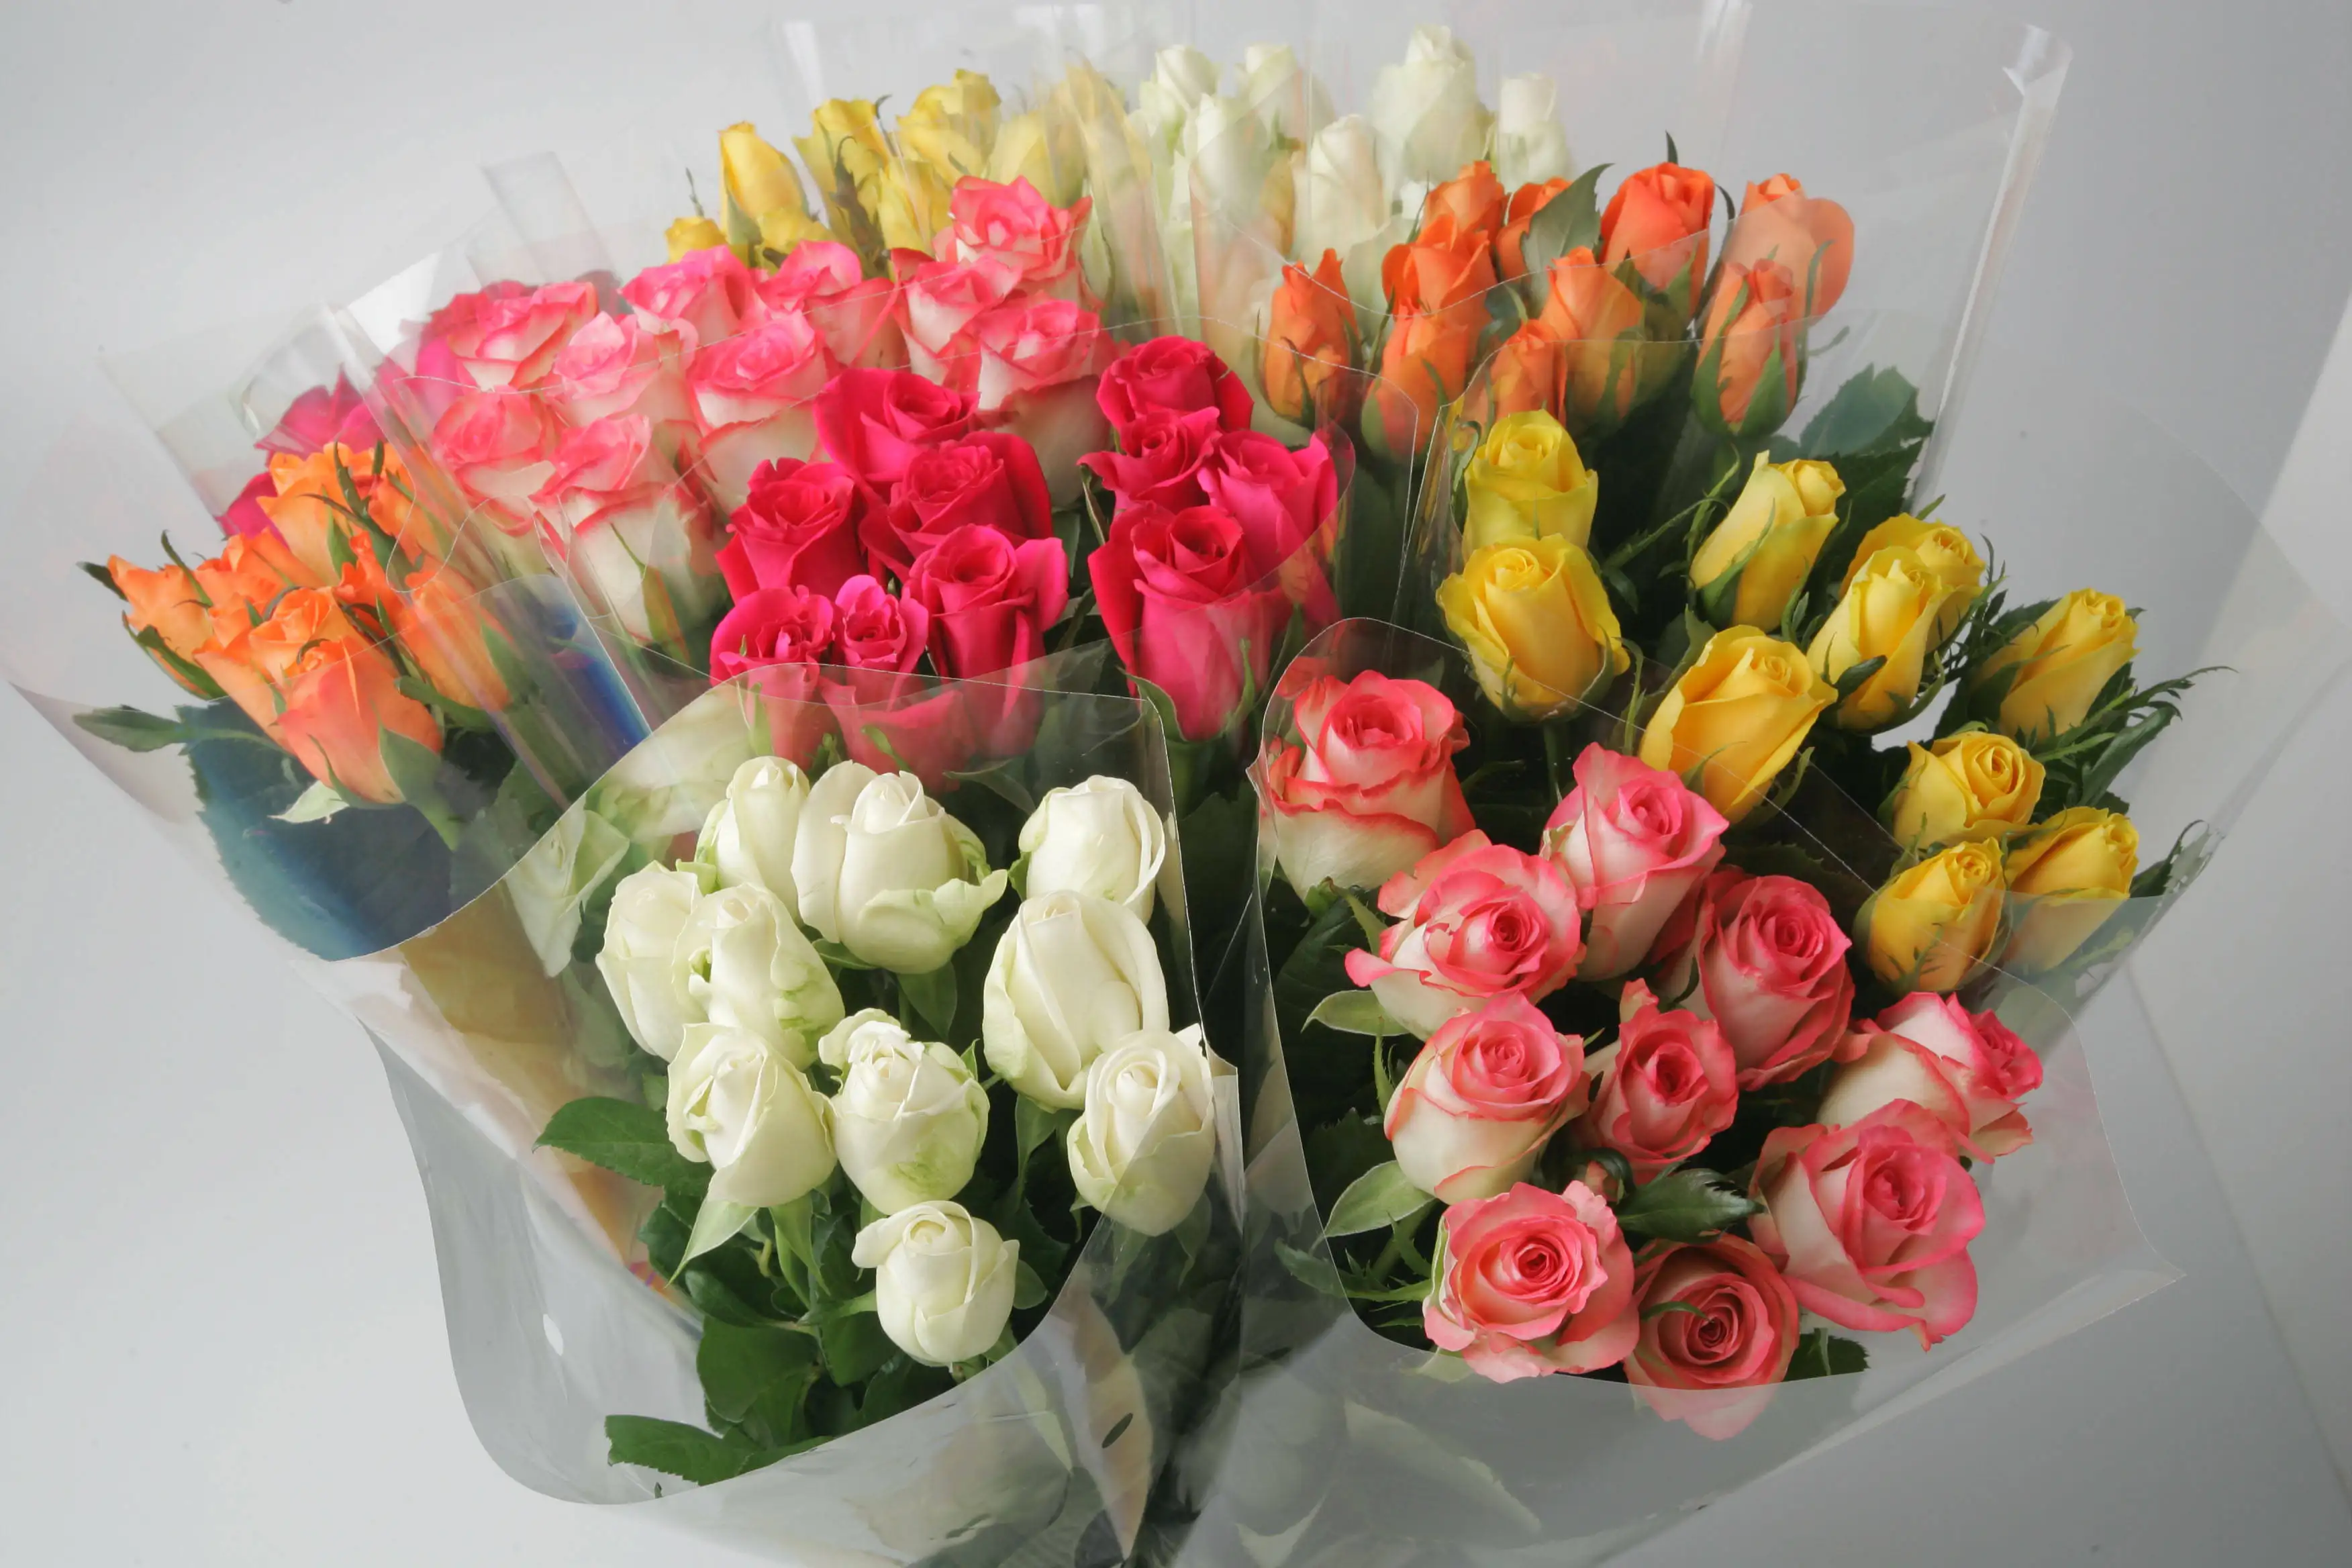 Segar Kenyan baru potongan bunga segar memori mawar merah muda tebal kepala besar 50cm batang grosir ritel potongan segar mawar